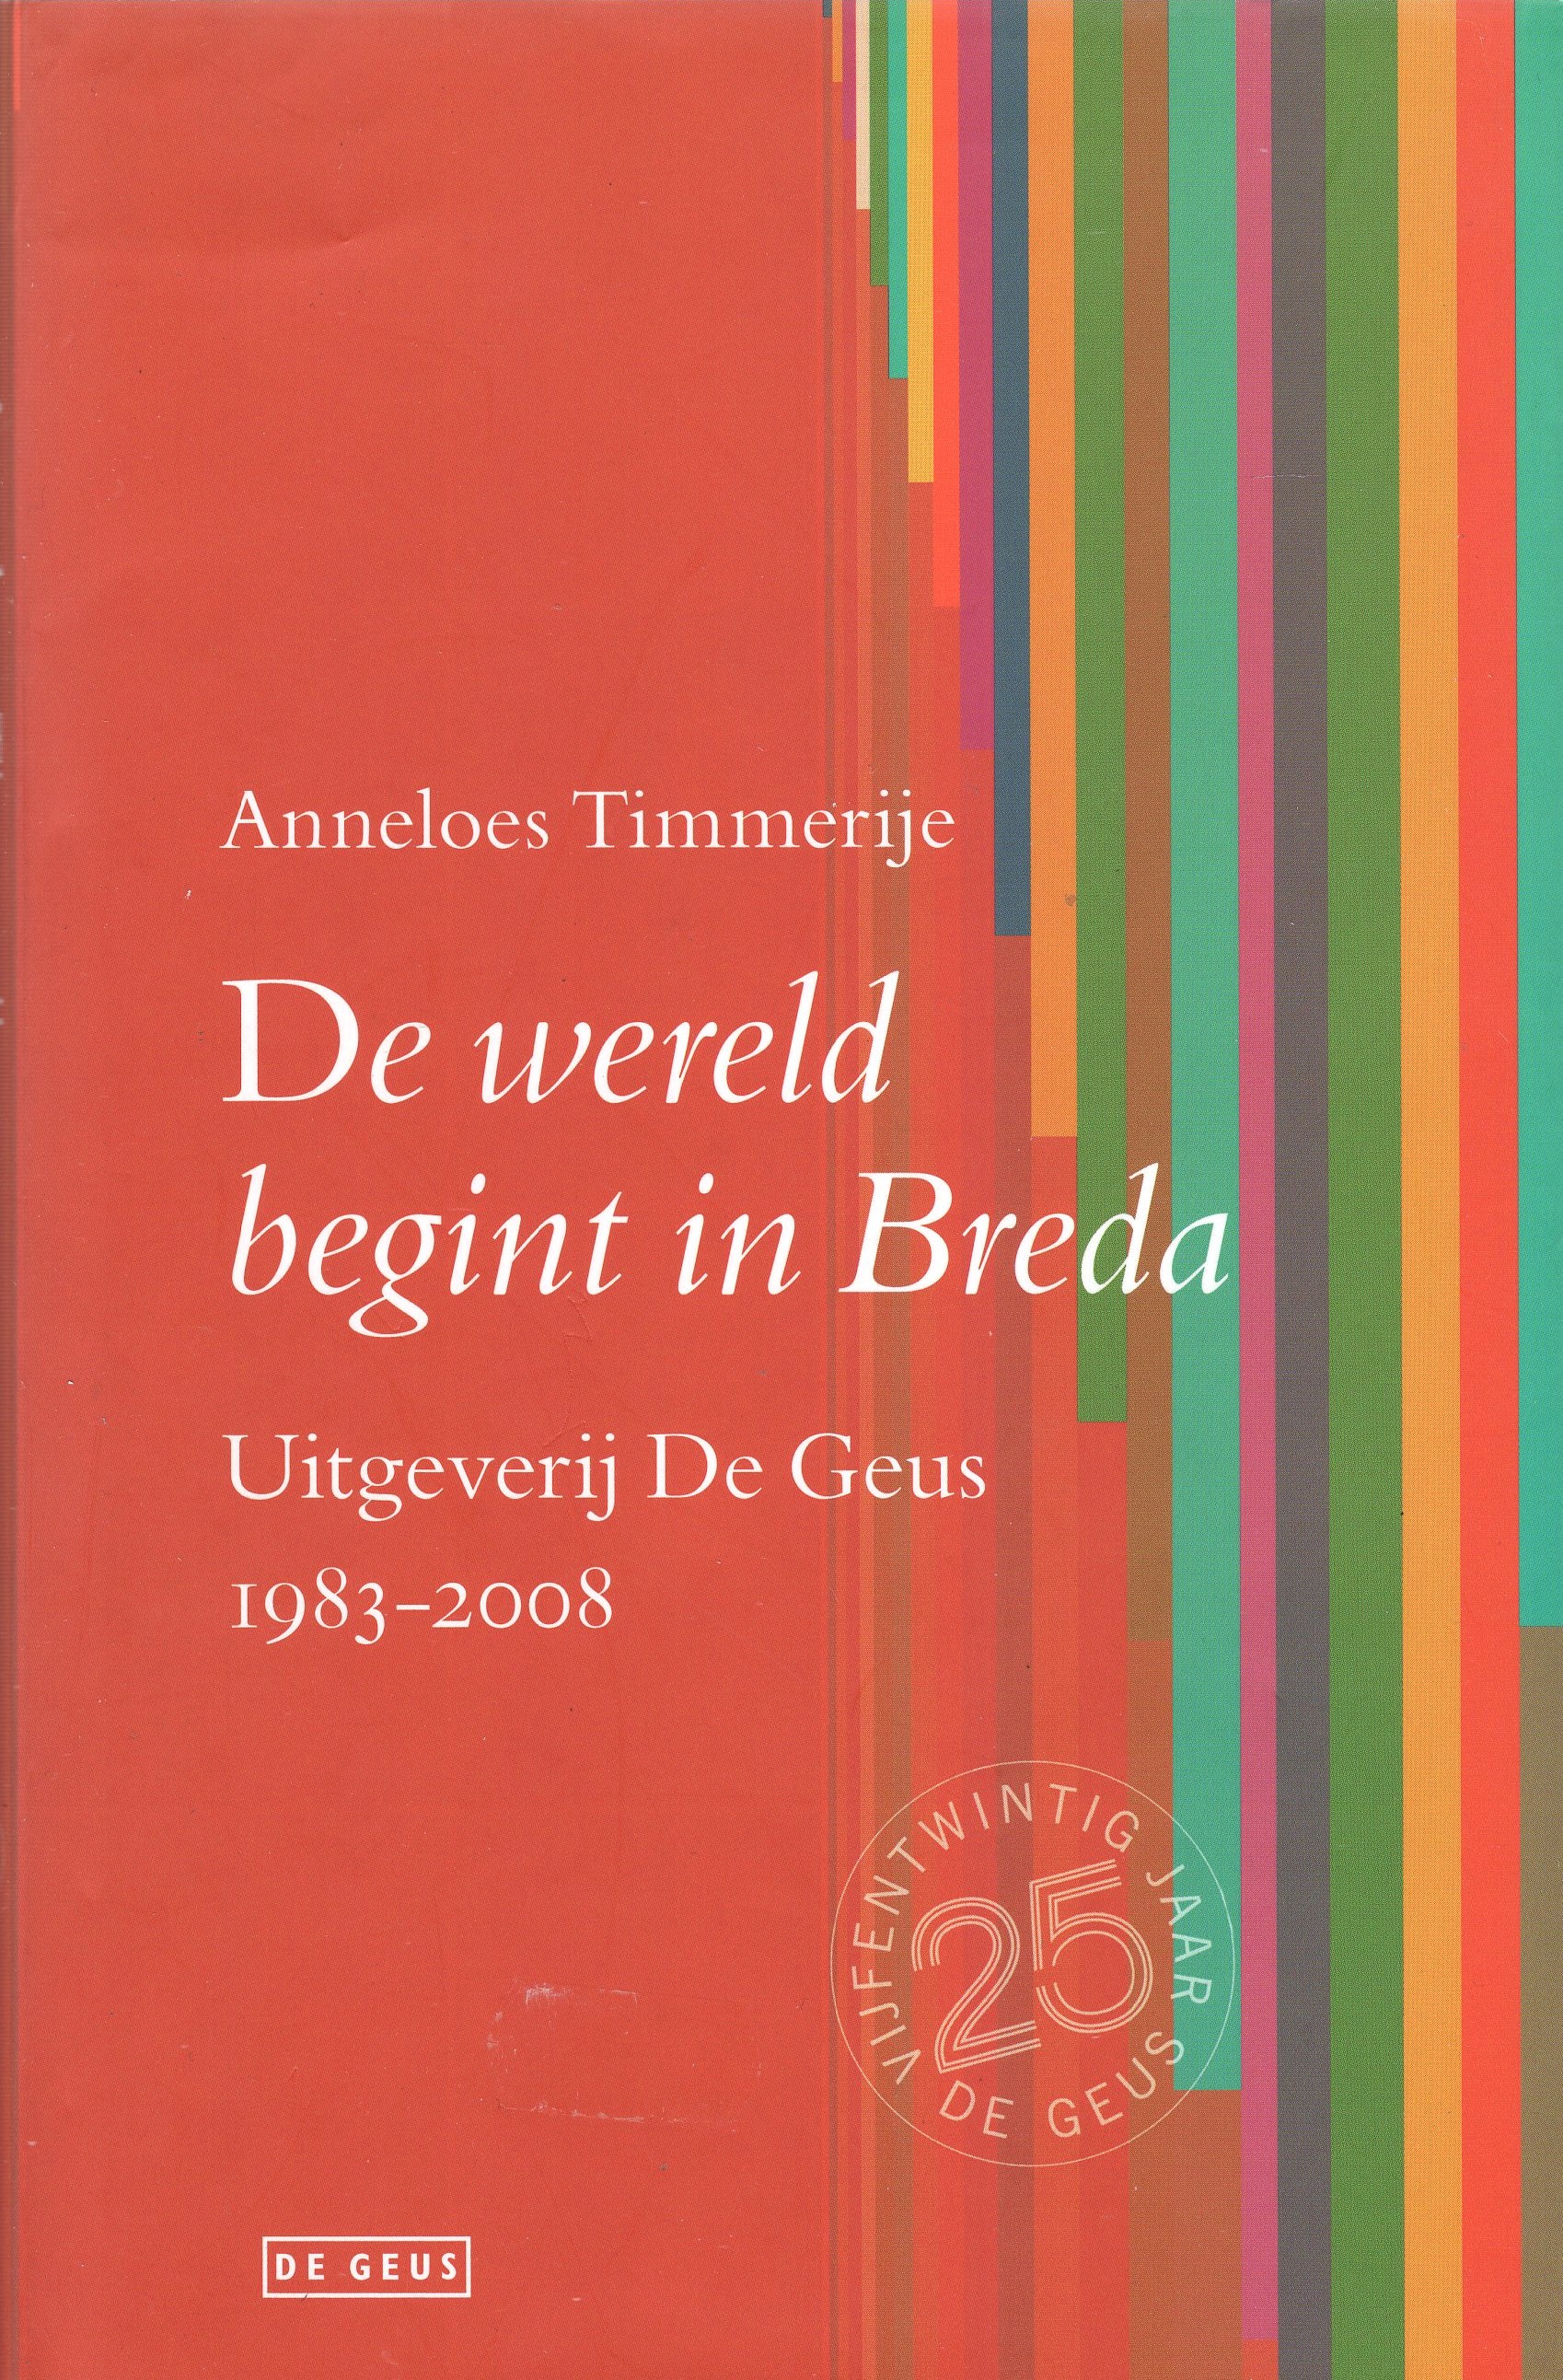 Timmerije, Anneloes - De wereld begint in Breda, Uitgeverij De Geus (1983-2008)`.